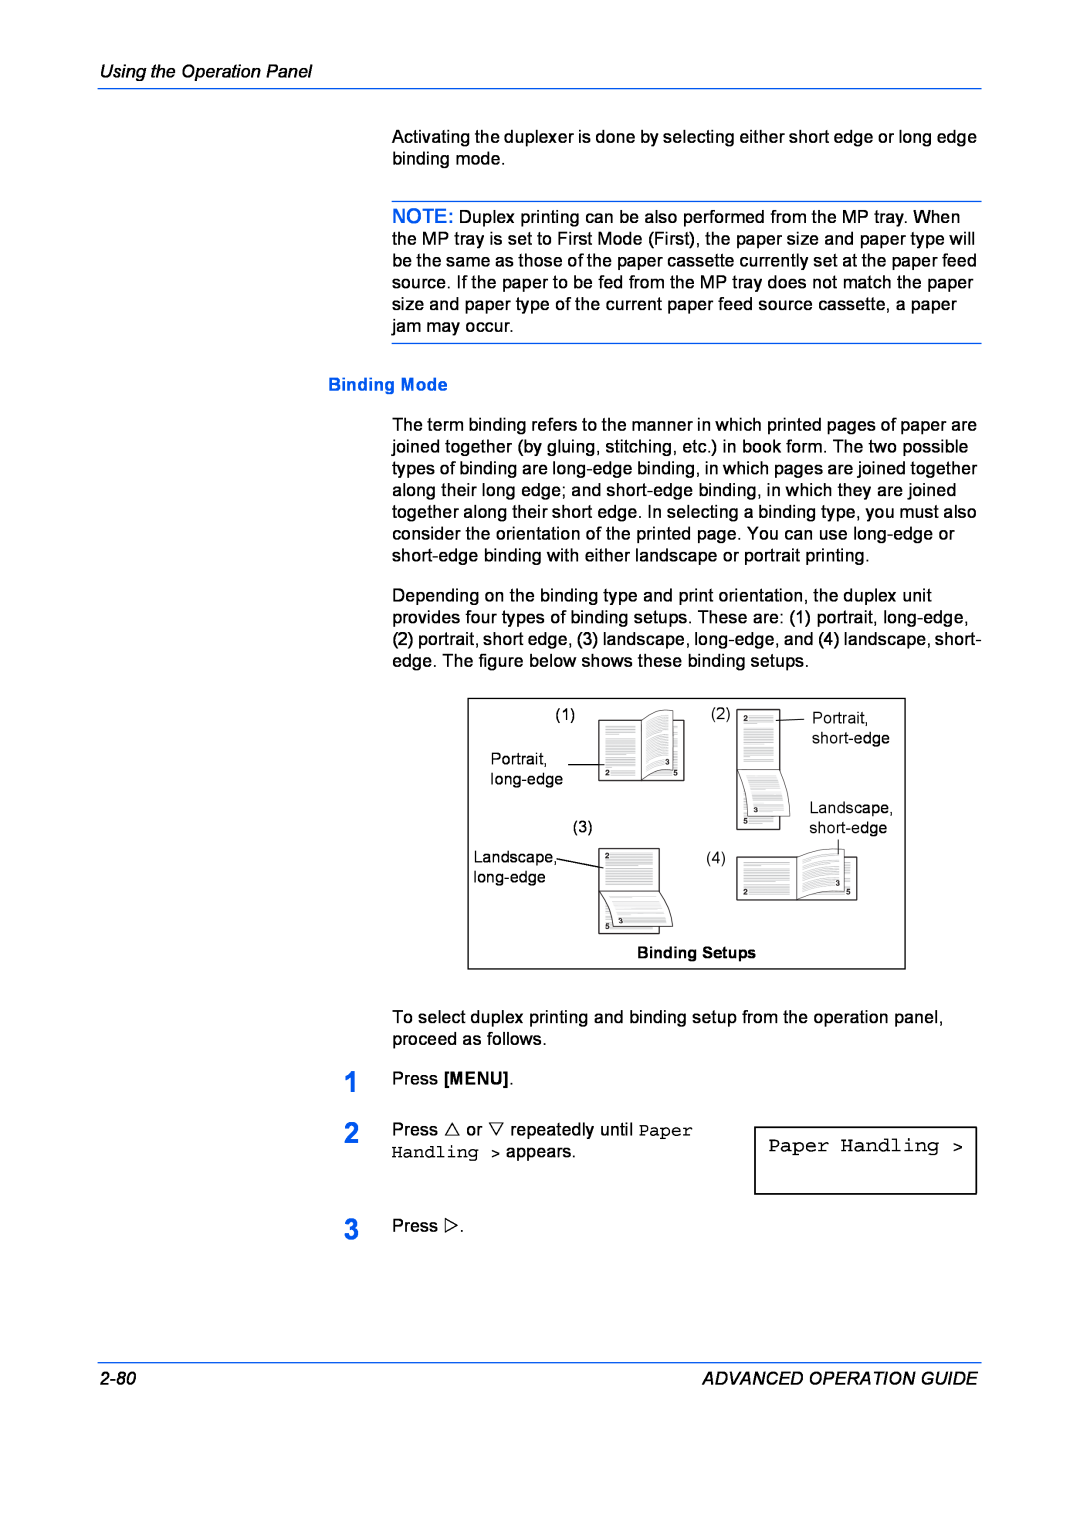 Kyocera 9530DN manual Paper Handling, Binding Mode 